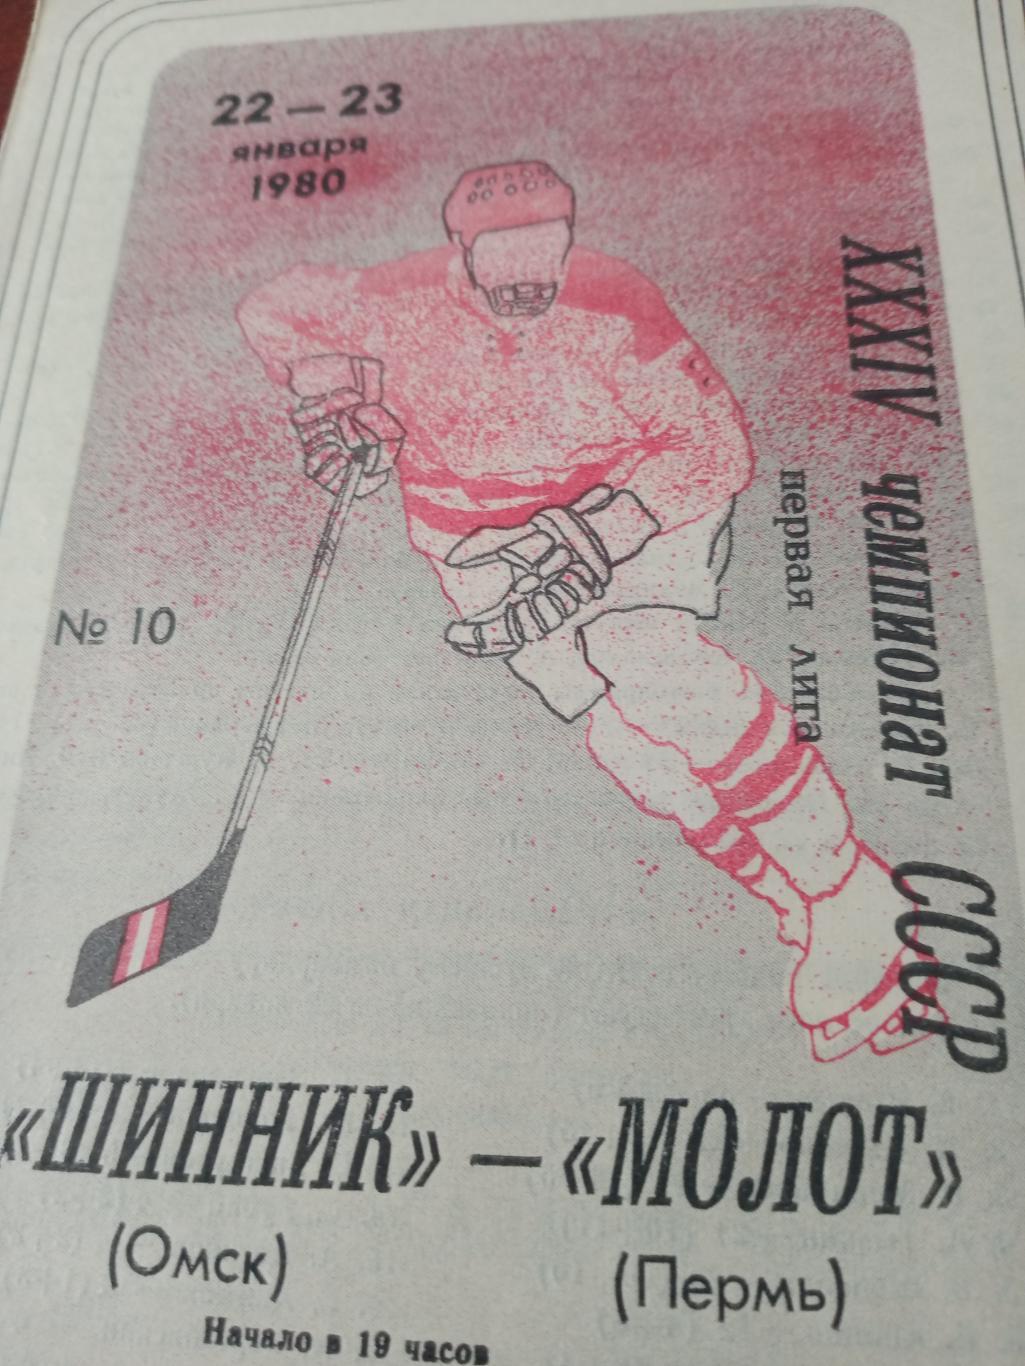 Шинник Омск - Молот Пермь. 22 и 23 января 1980 год